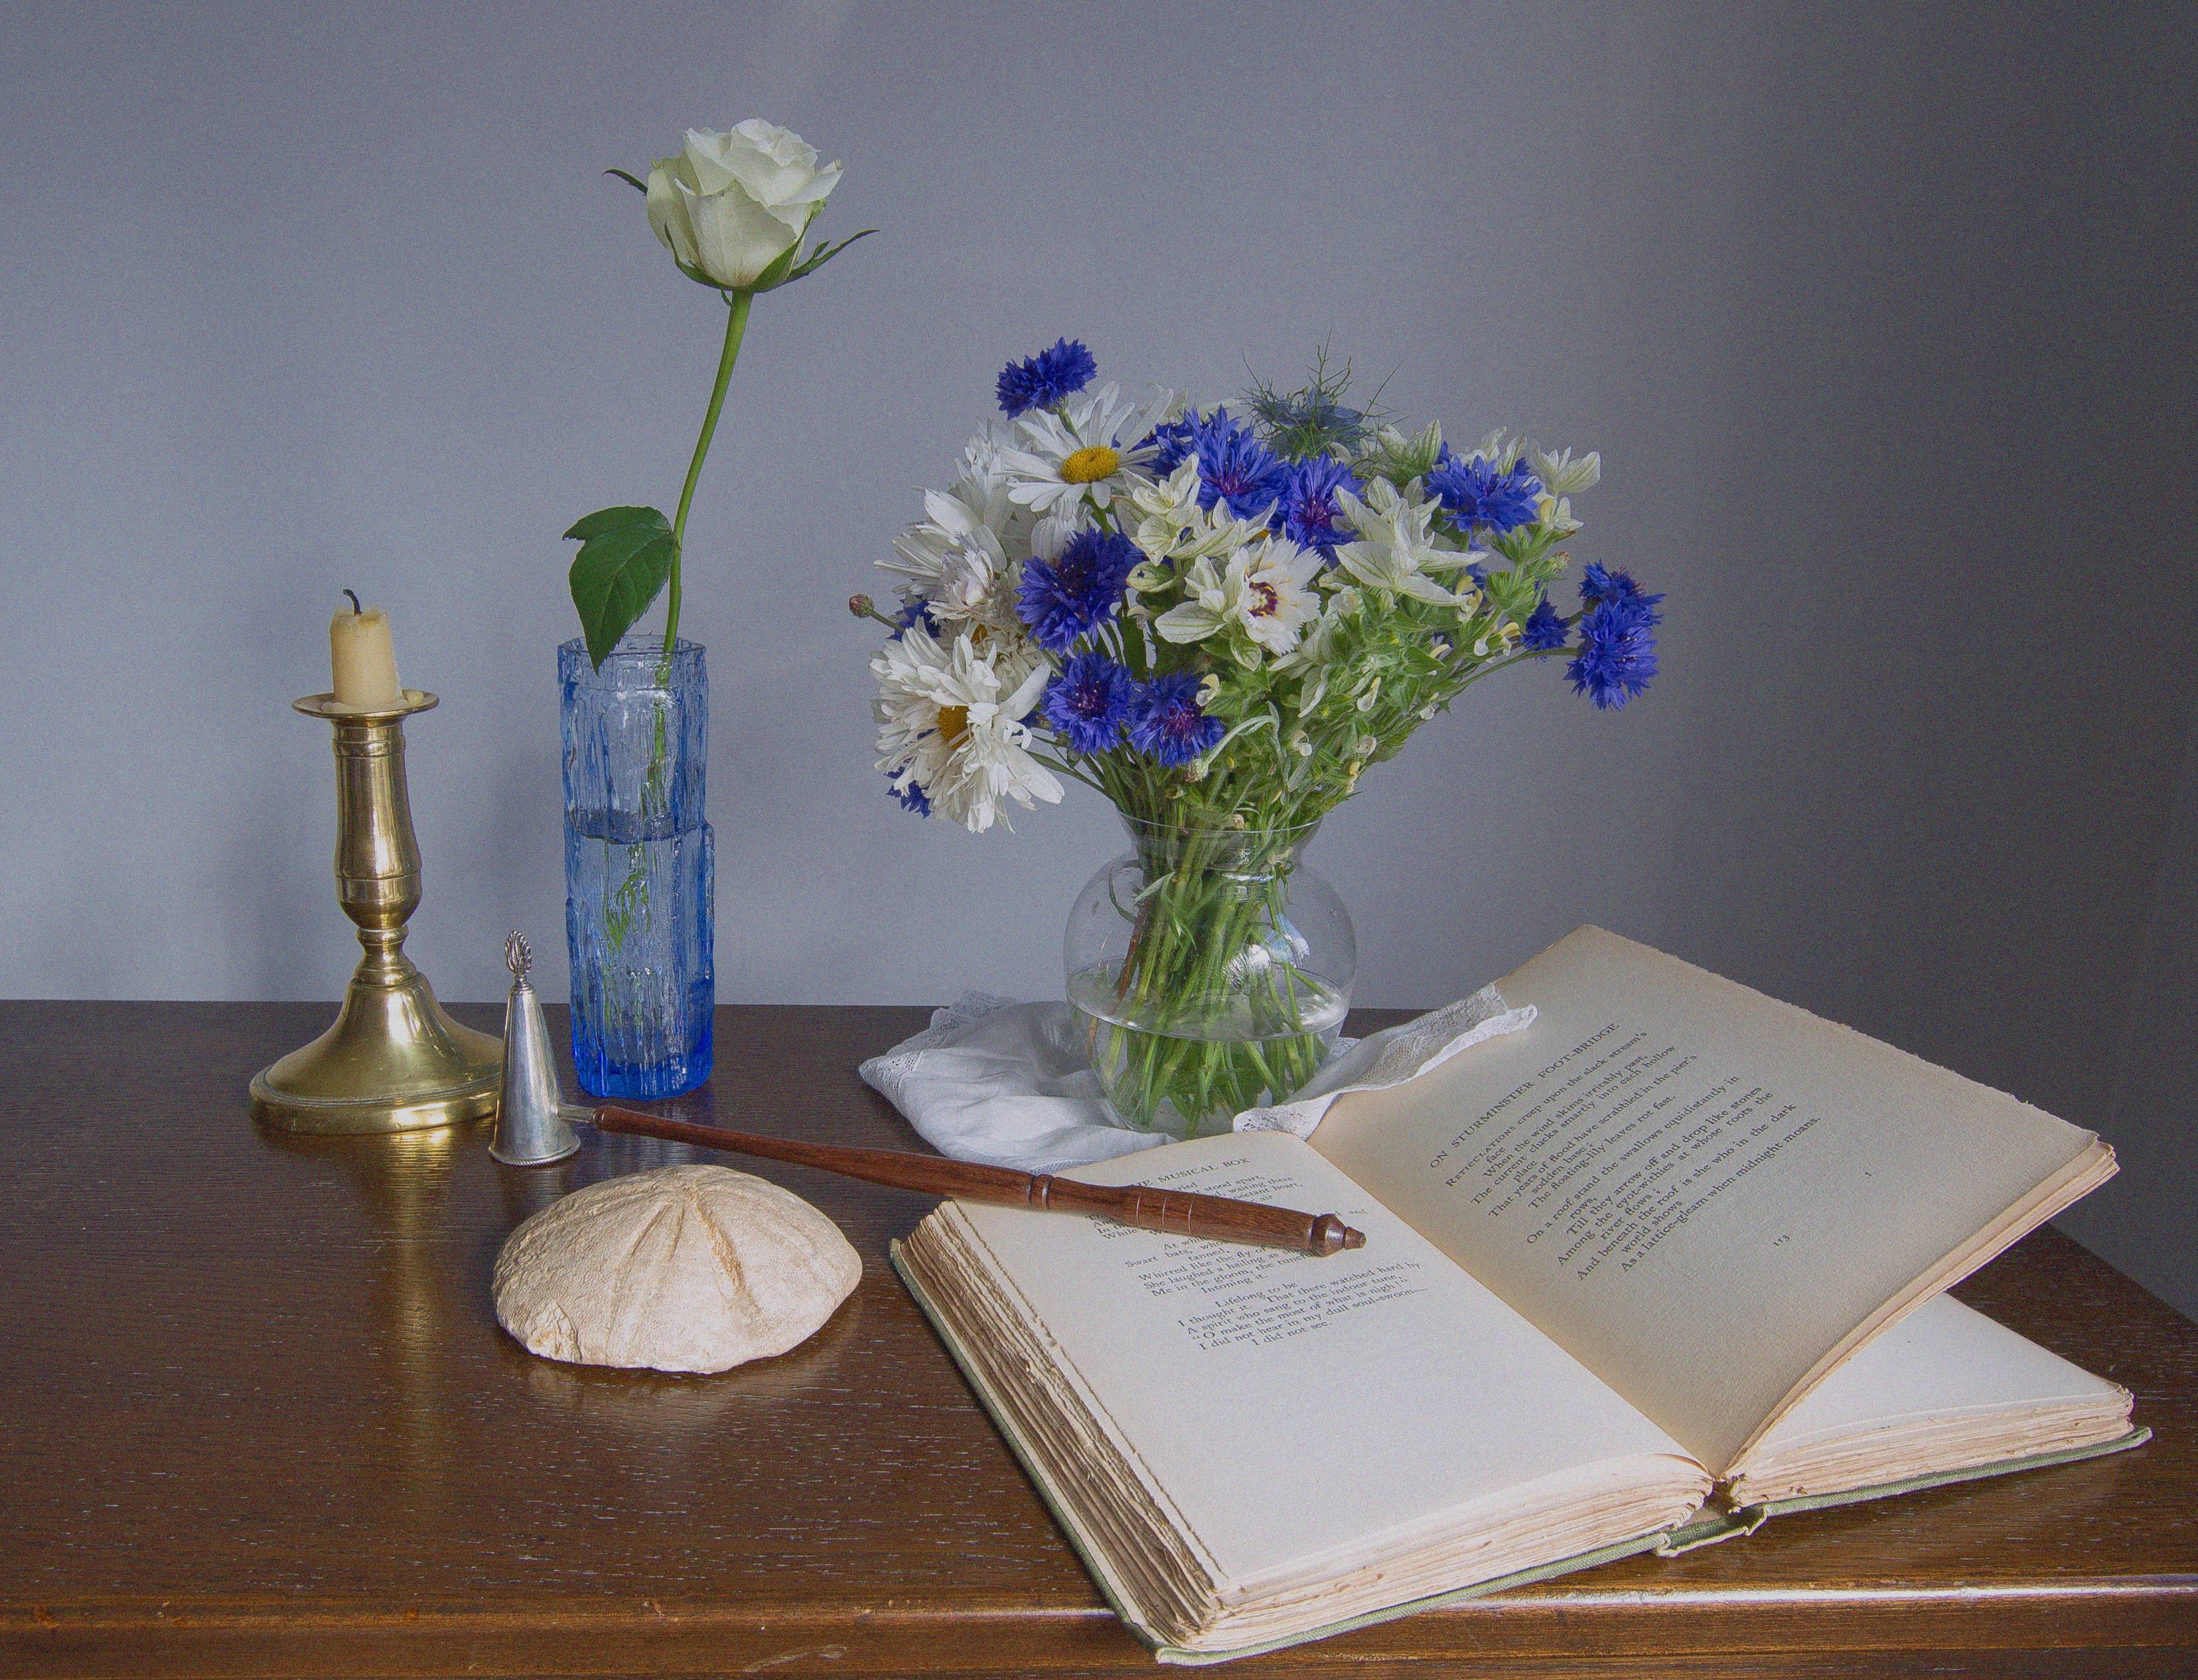 桌面上的壁纸图书 瓶 花束